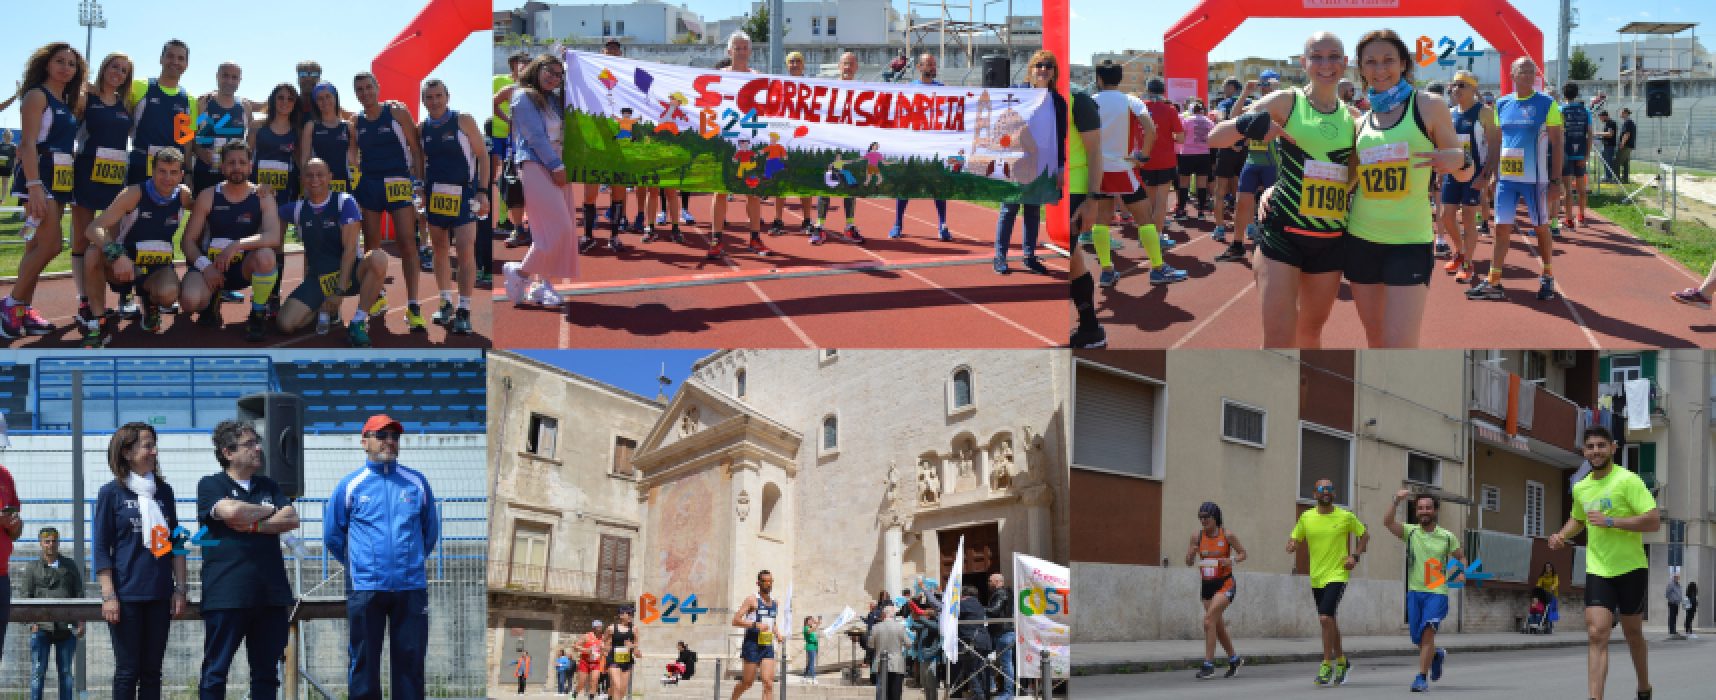 Maratona delle Cattedrali, running, benessere e solidarietà colorano Bisceglie / FOTO